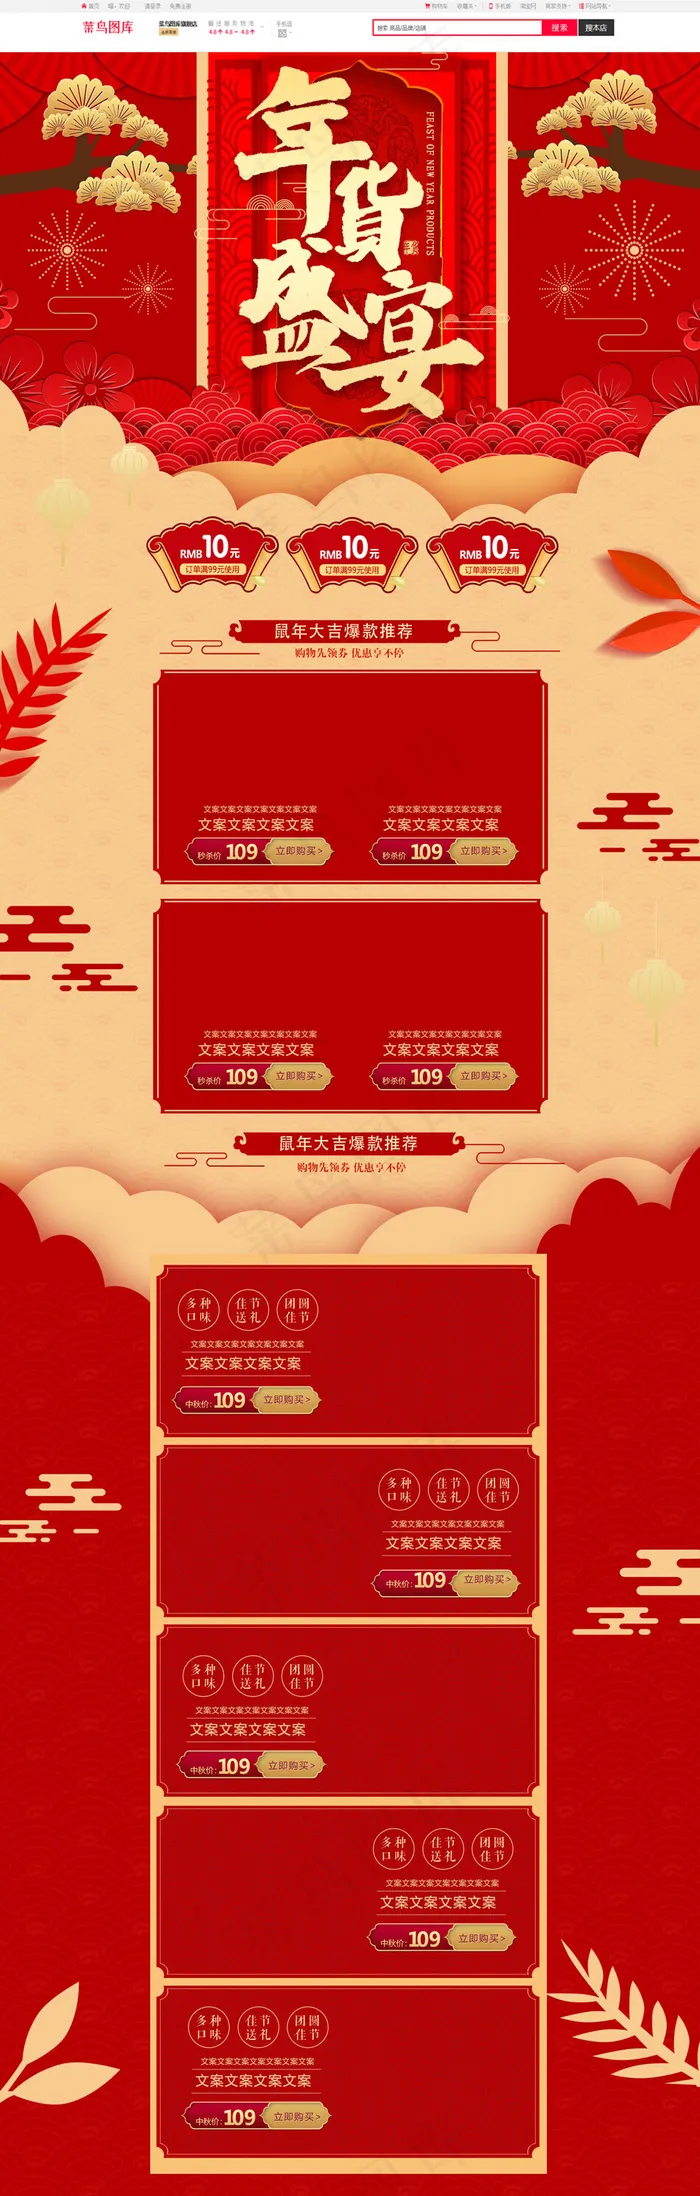 年货盛宴红色淘宝电商首页PC端模板